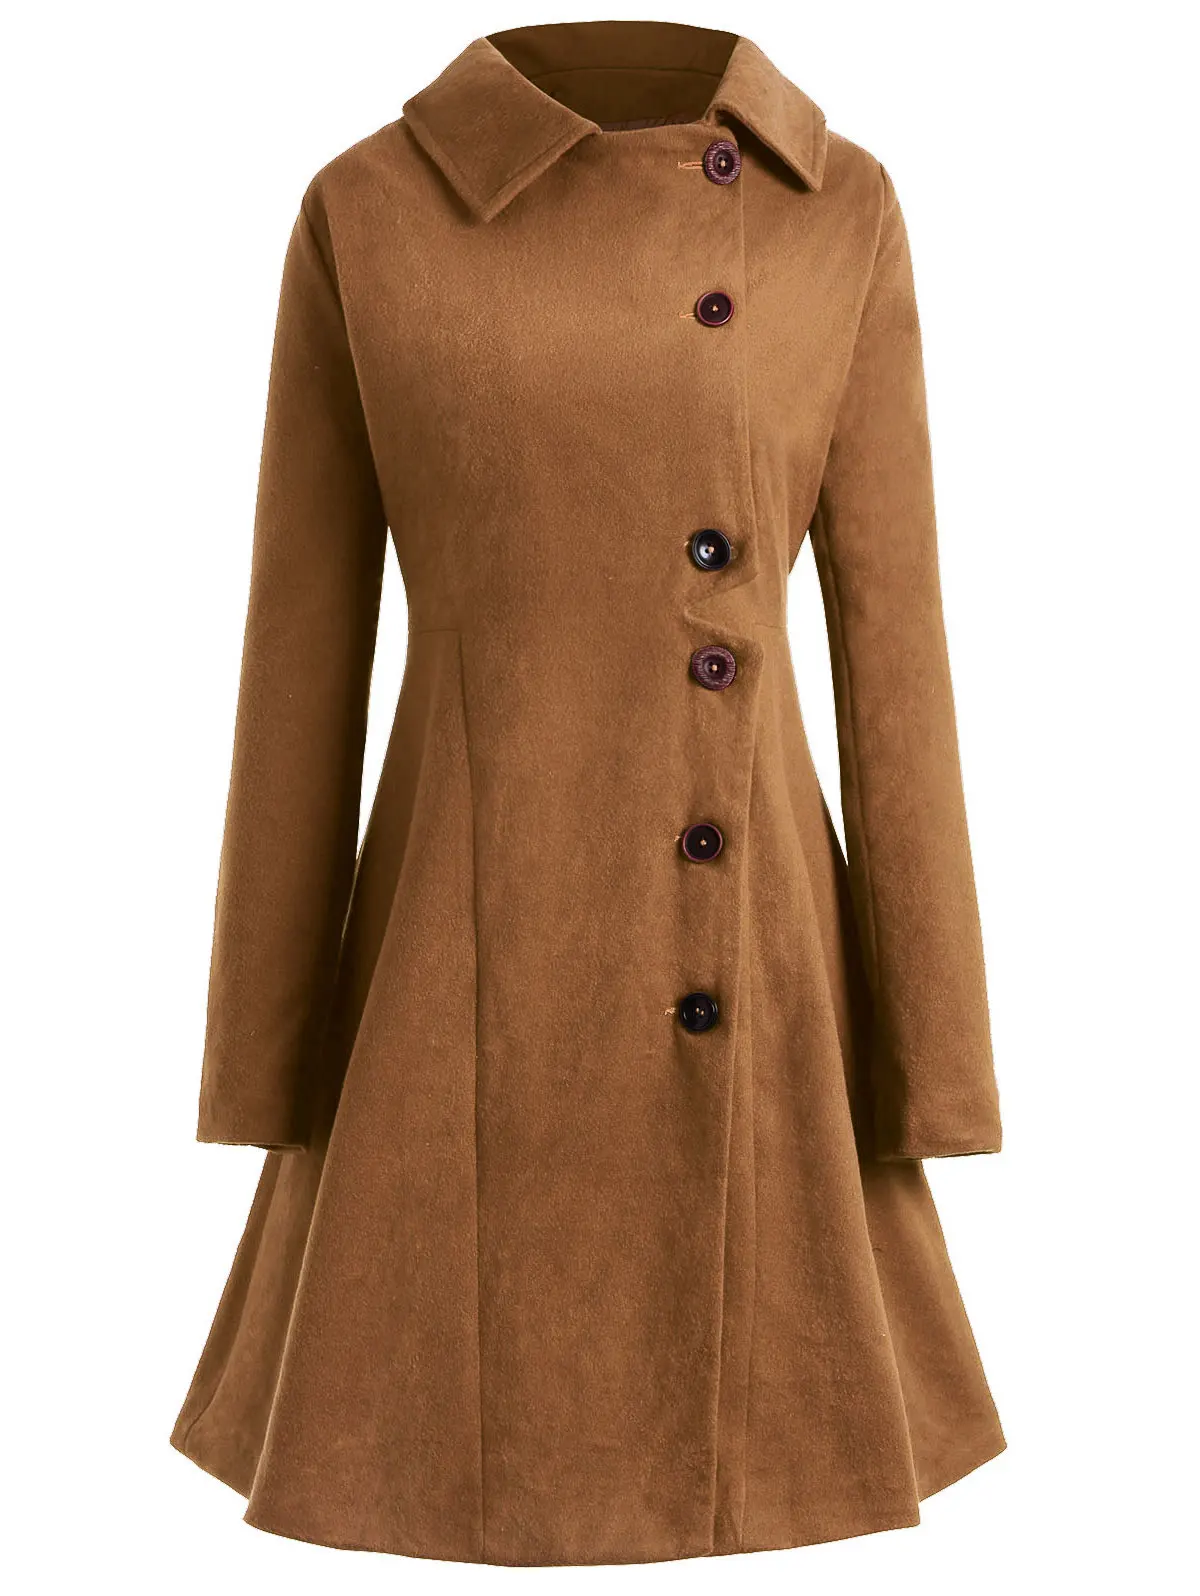 ROSEGAL, пальто размера плюс на пуговицах, женское, зимнее пальто, хлопковая зимняя куртка, женские топы, верхняя одежда, женская одежда, пальто - Цвет: Cinnamon